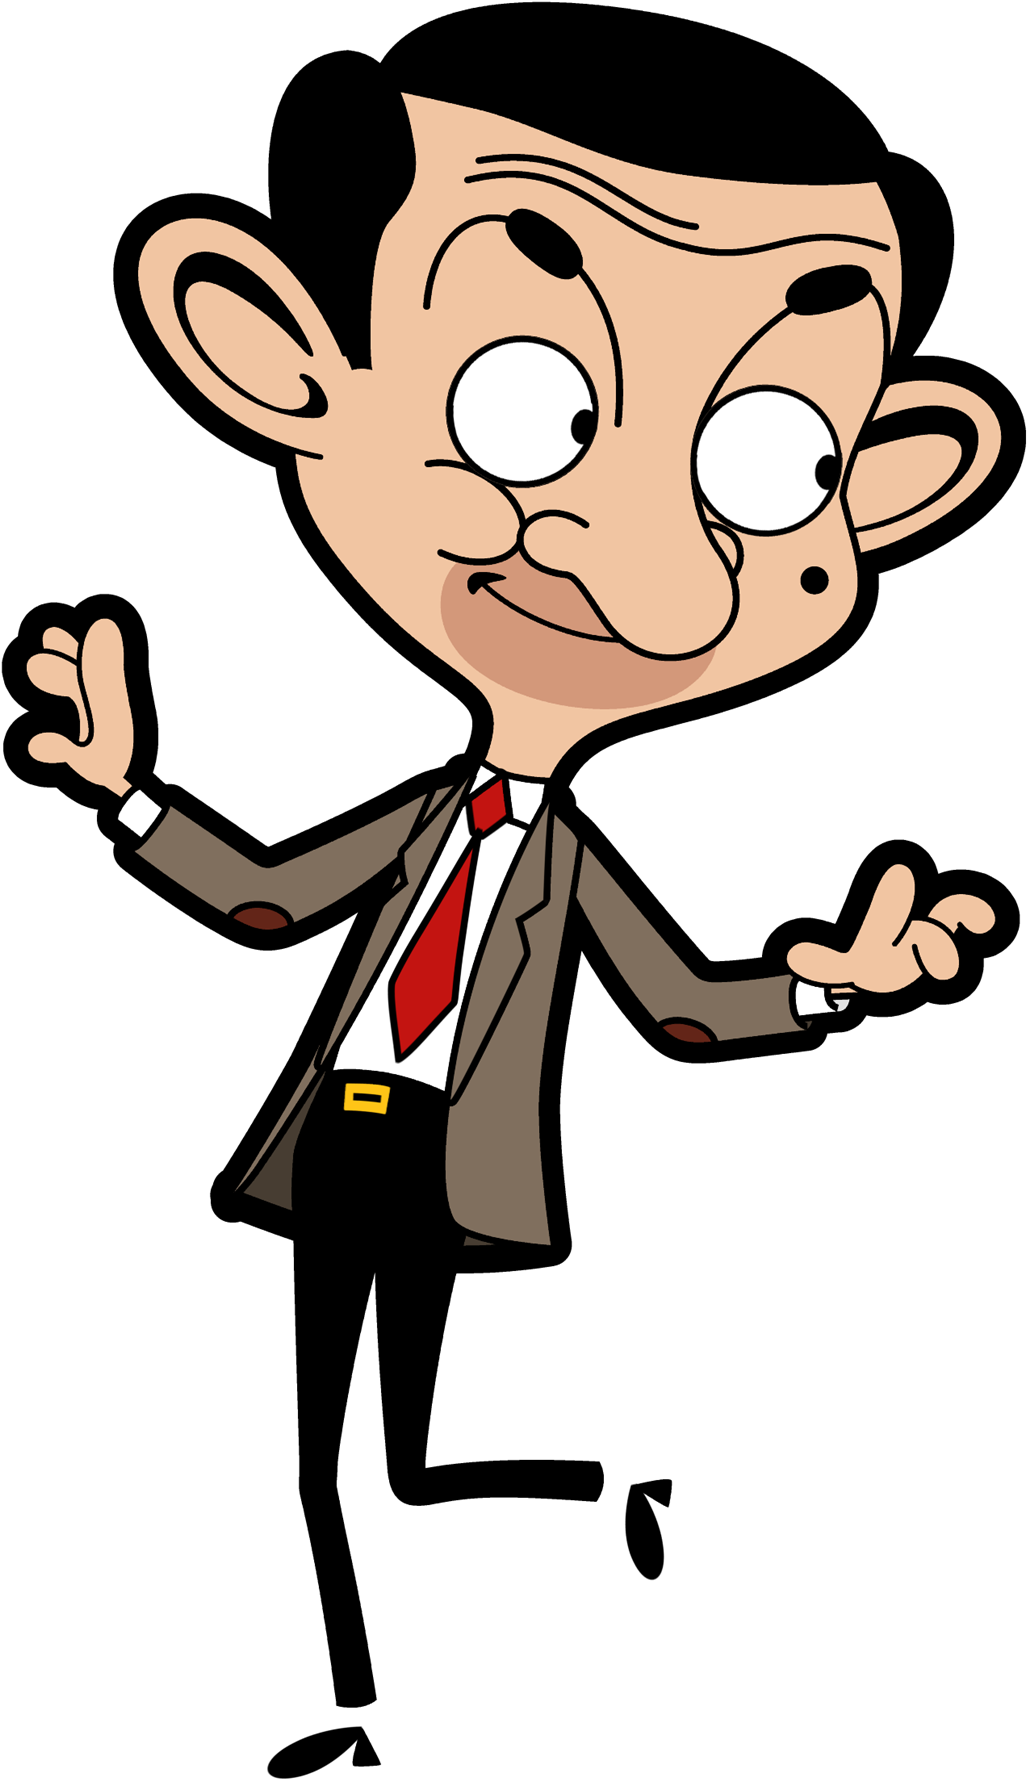 การ์ตูน Mr. Bean PNG Clipart